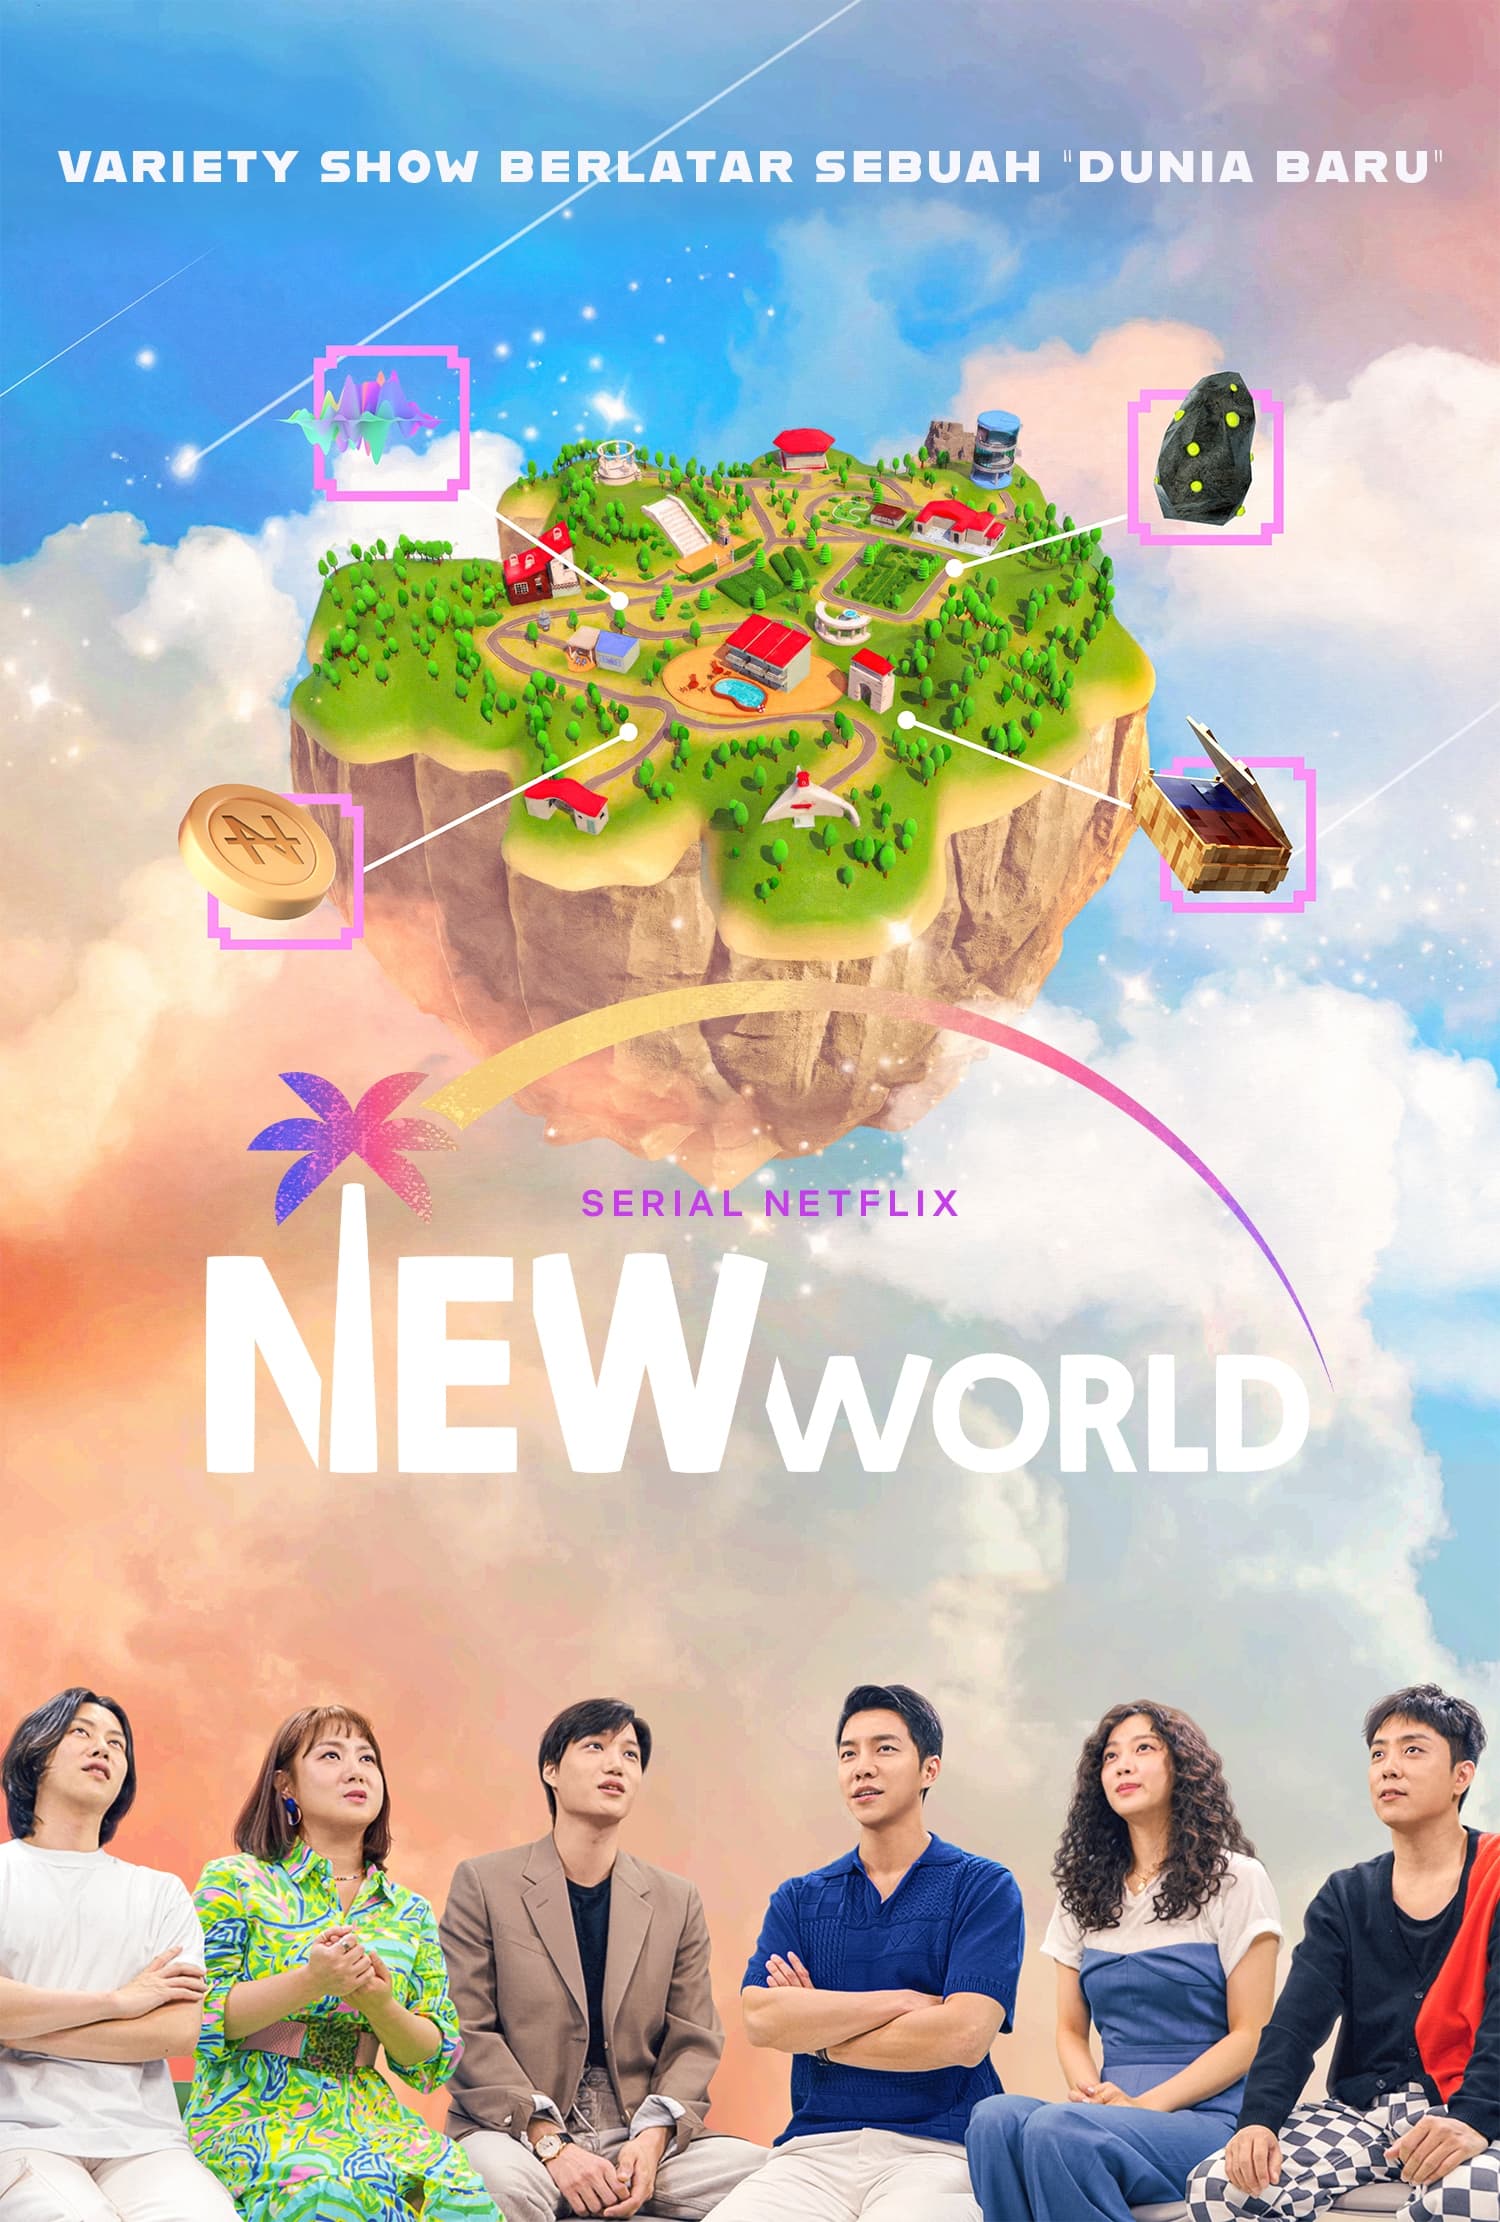 مشاهدة مسلسل العالم الجديد New World الحلقة 5 الخامسة